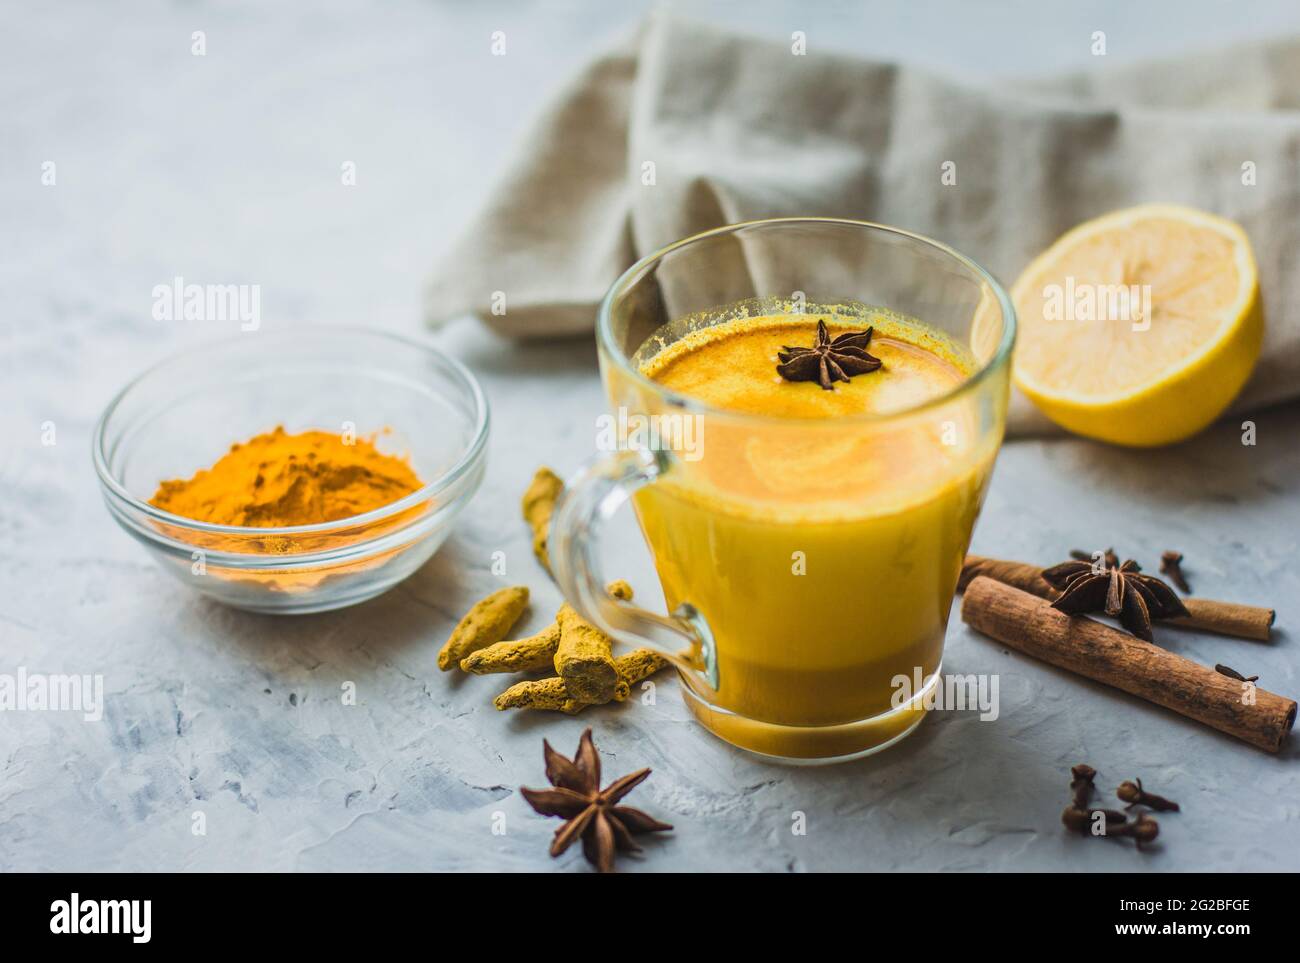 Ein schönes Glas mit goldener Milch, Kurkuma, Gewürzen und Zitrone auf grauem Hintergrund. Gesundes ayurvedisches Getränk. Stärkung des Immunsystems. Antioxi Stockfoto